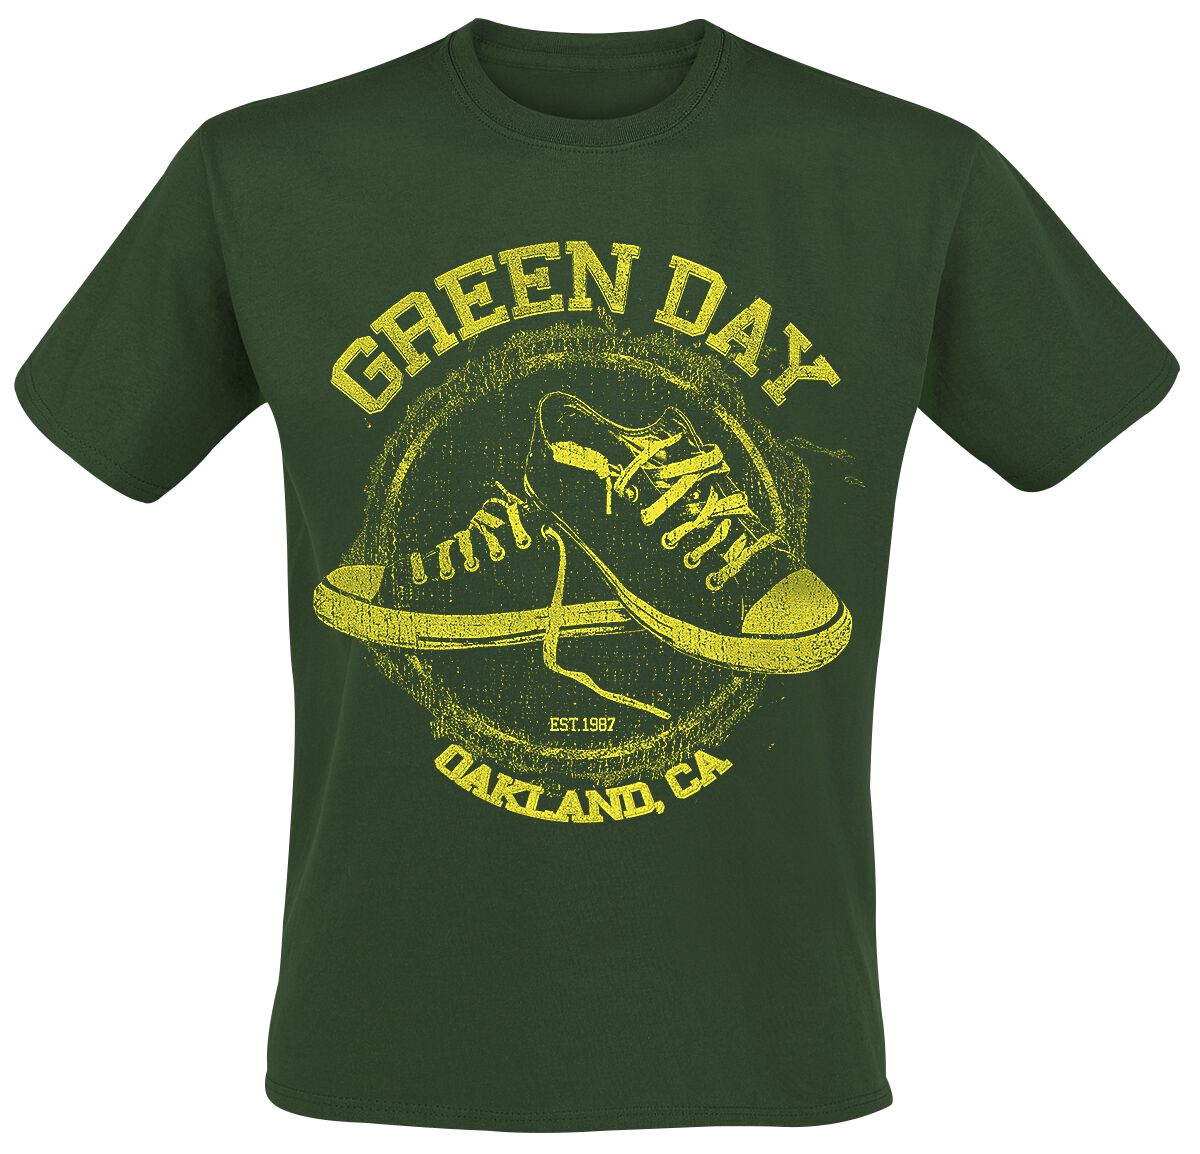 Green Day T-Shirt - All Star - S bis XXL - für Männer - Größe XL - grün  - Lizenziertes Merchandise!